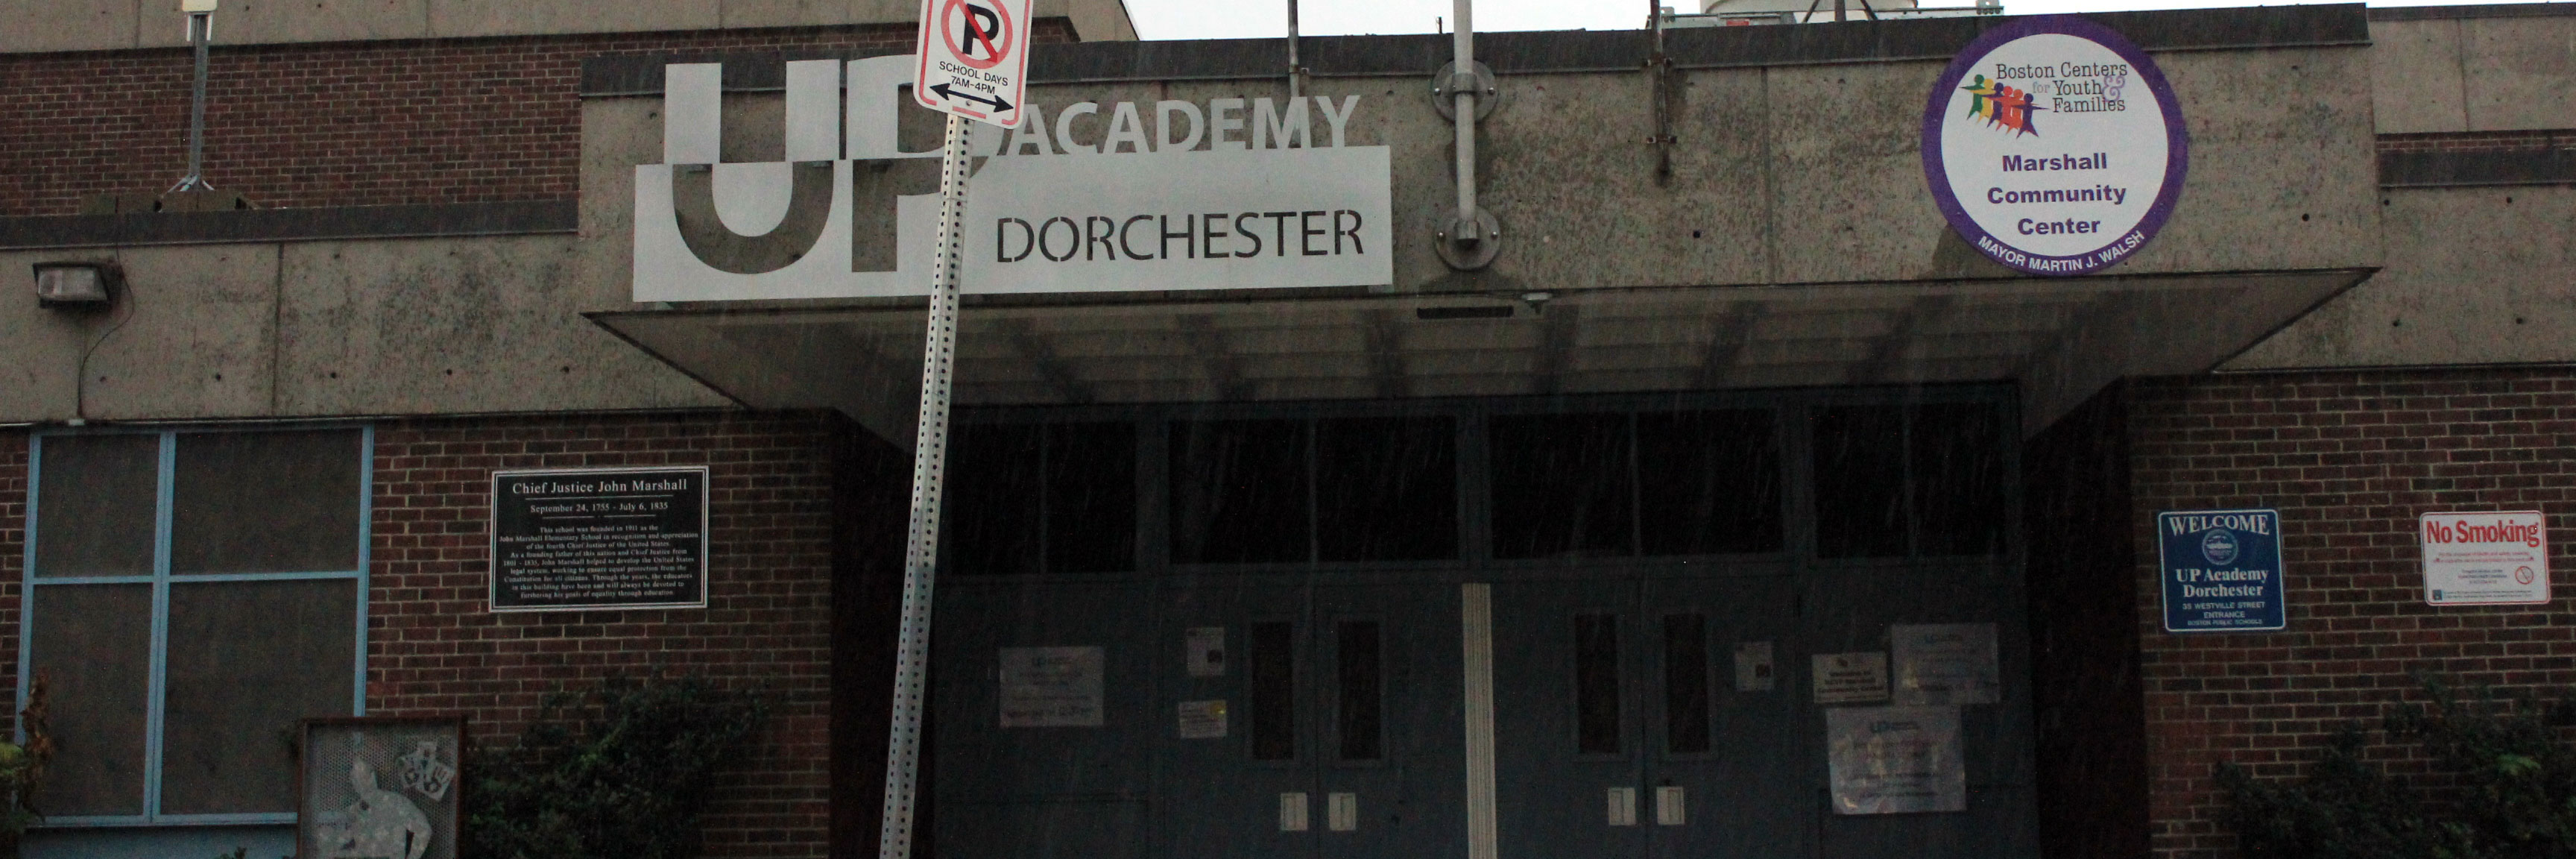 UP Academy Charter School of Dorchester | Boston School Finder